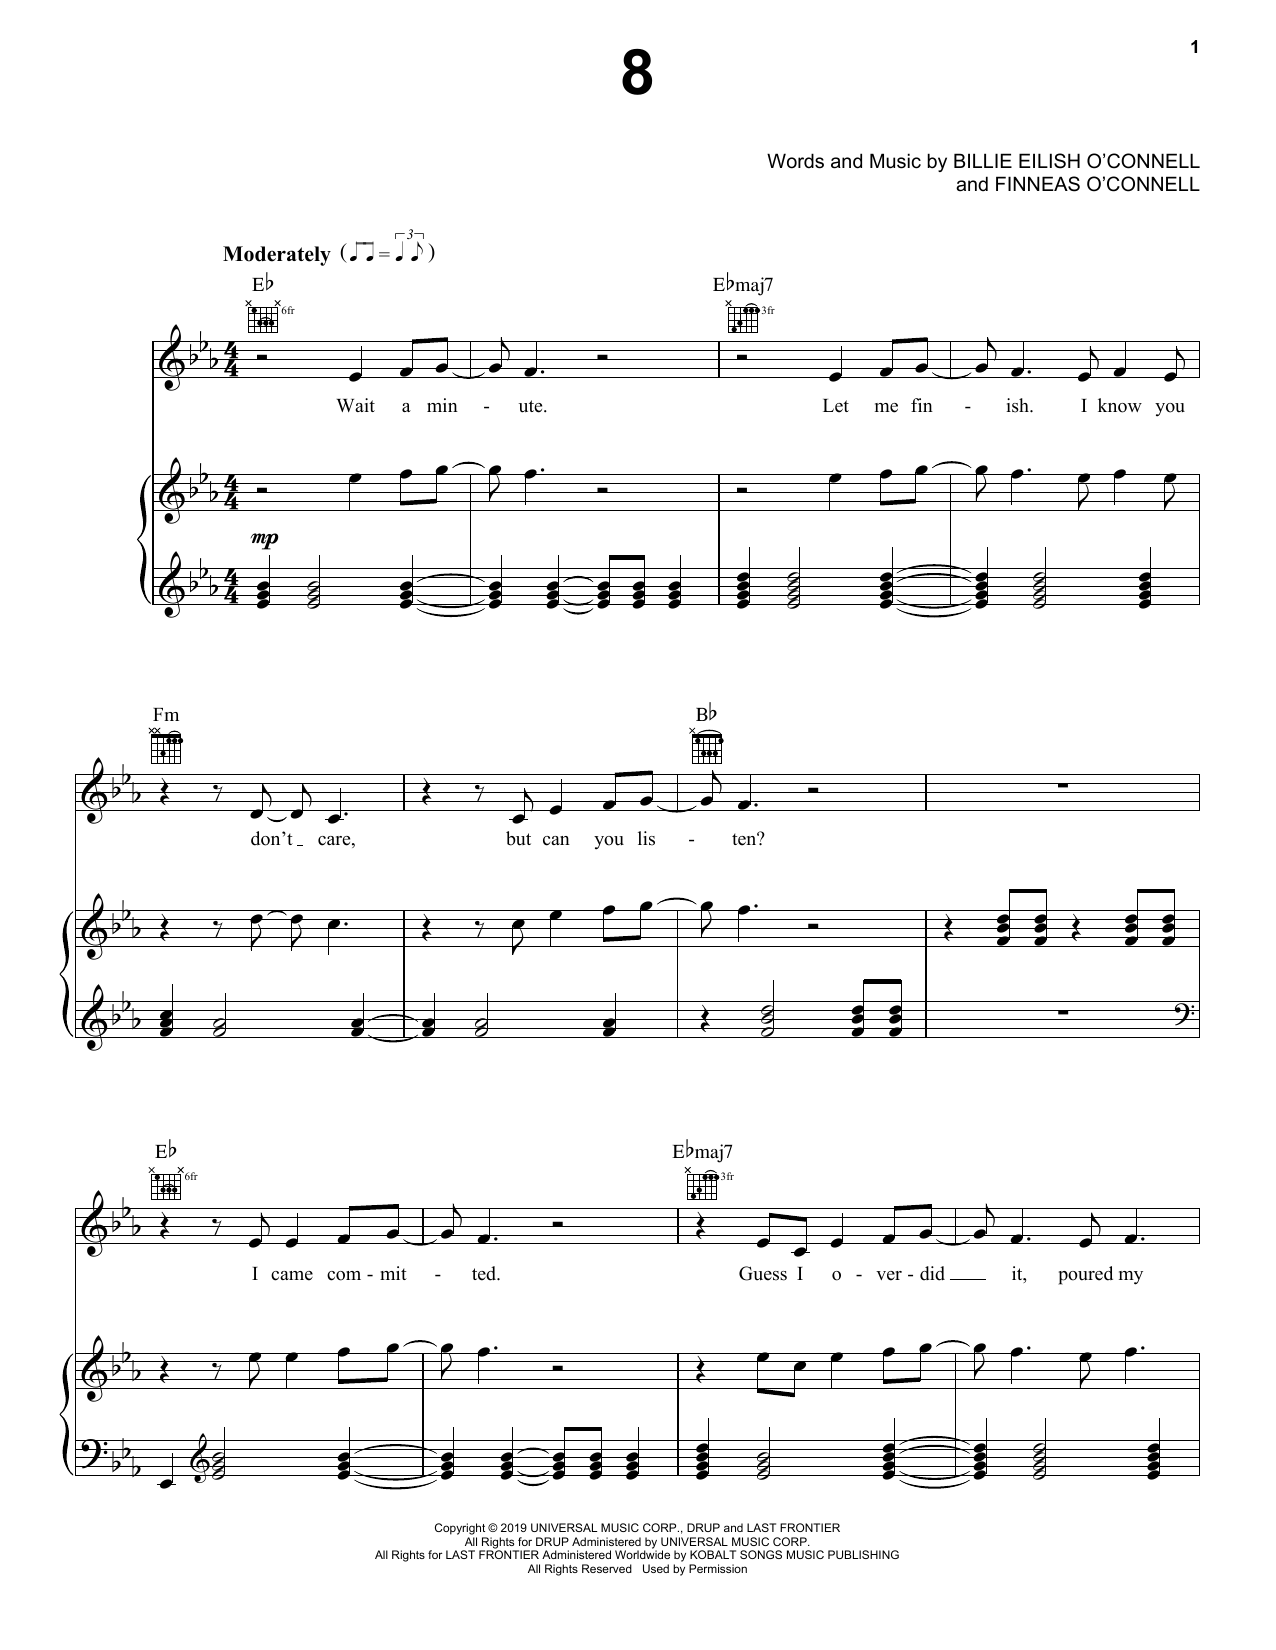 Billie Eilish 8 Sheet Music Notes & Chords for Ukulele - Download or Print PDF